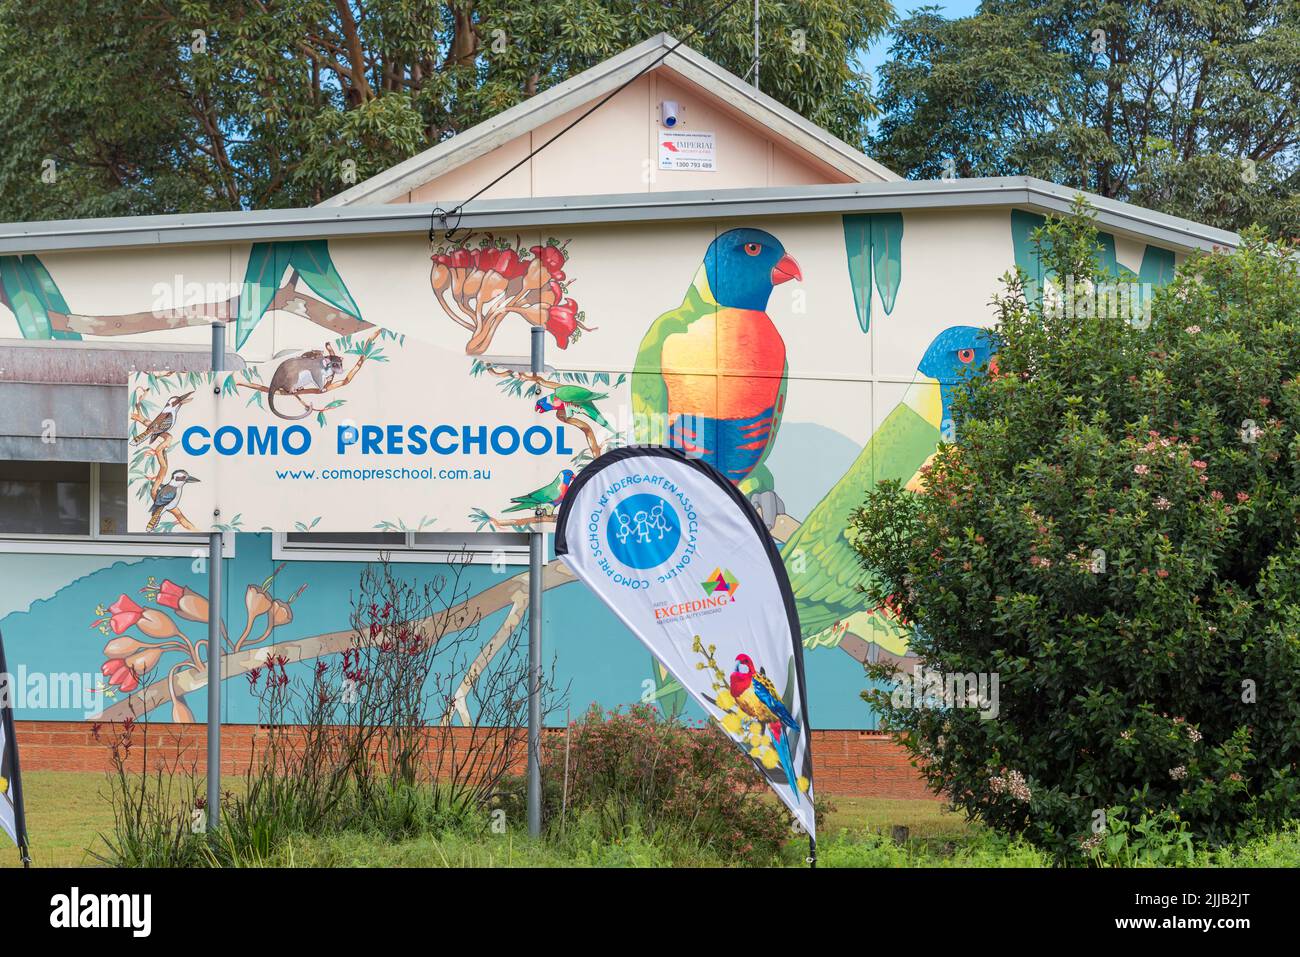 Con opere d'arte di Hugues sineux, artista murale, che adornano l'esterno, Como Preschool o centro di apprendimento precoce sembra un luogo divertente per i giovani Foto Stock